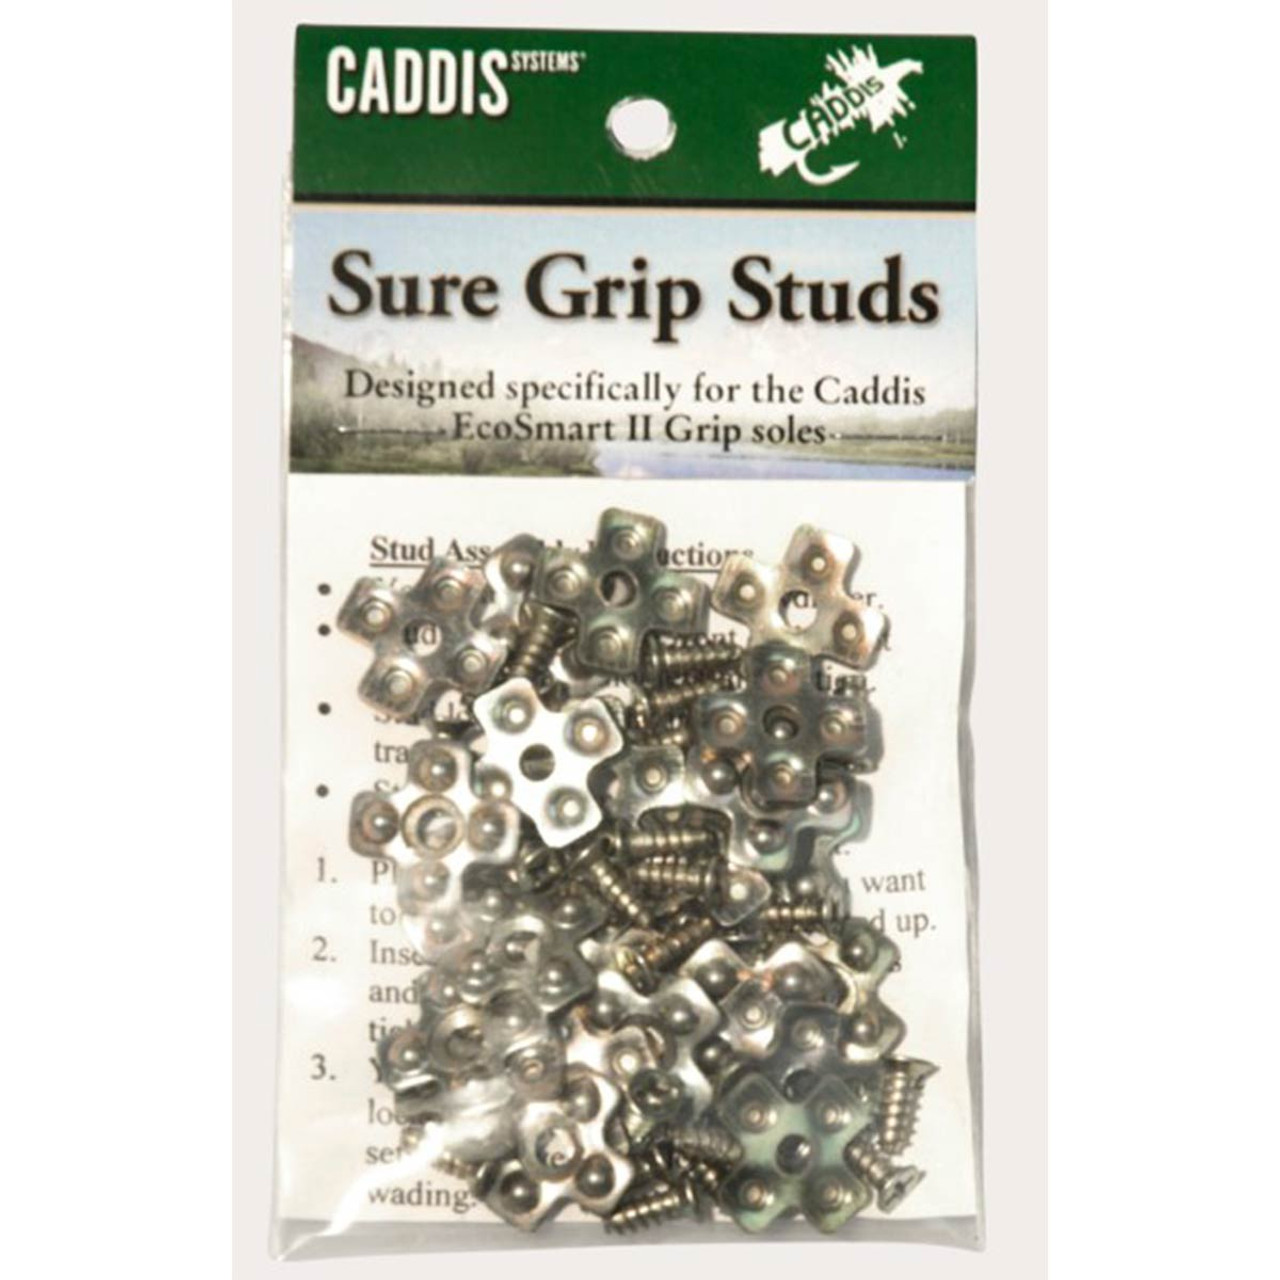 Caddis Systems Wading Shoe Stud Kit